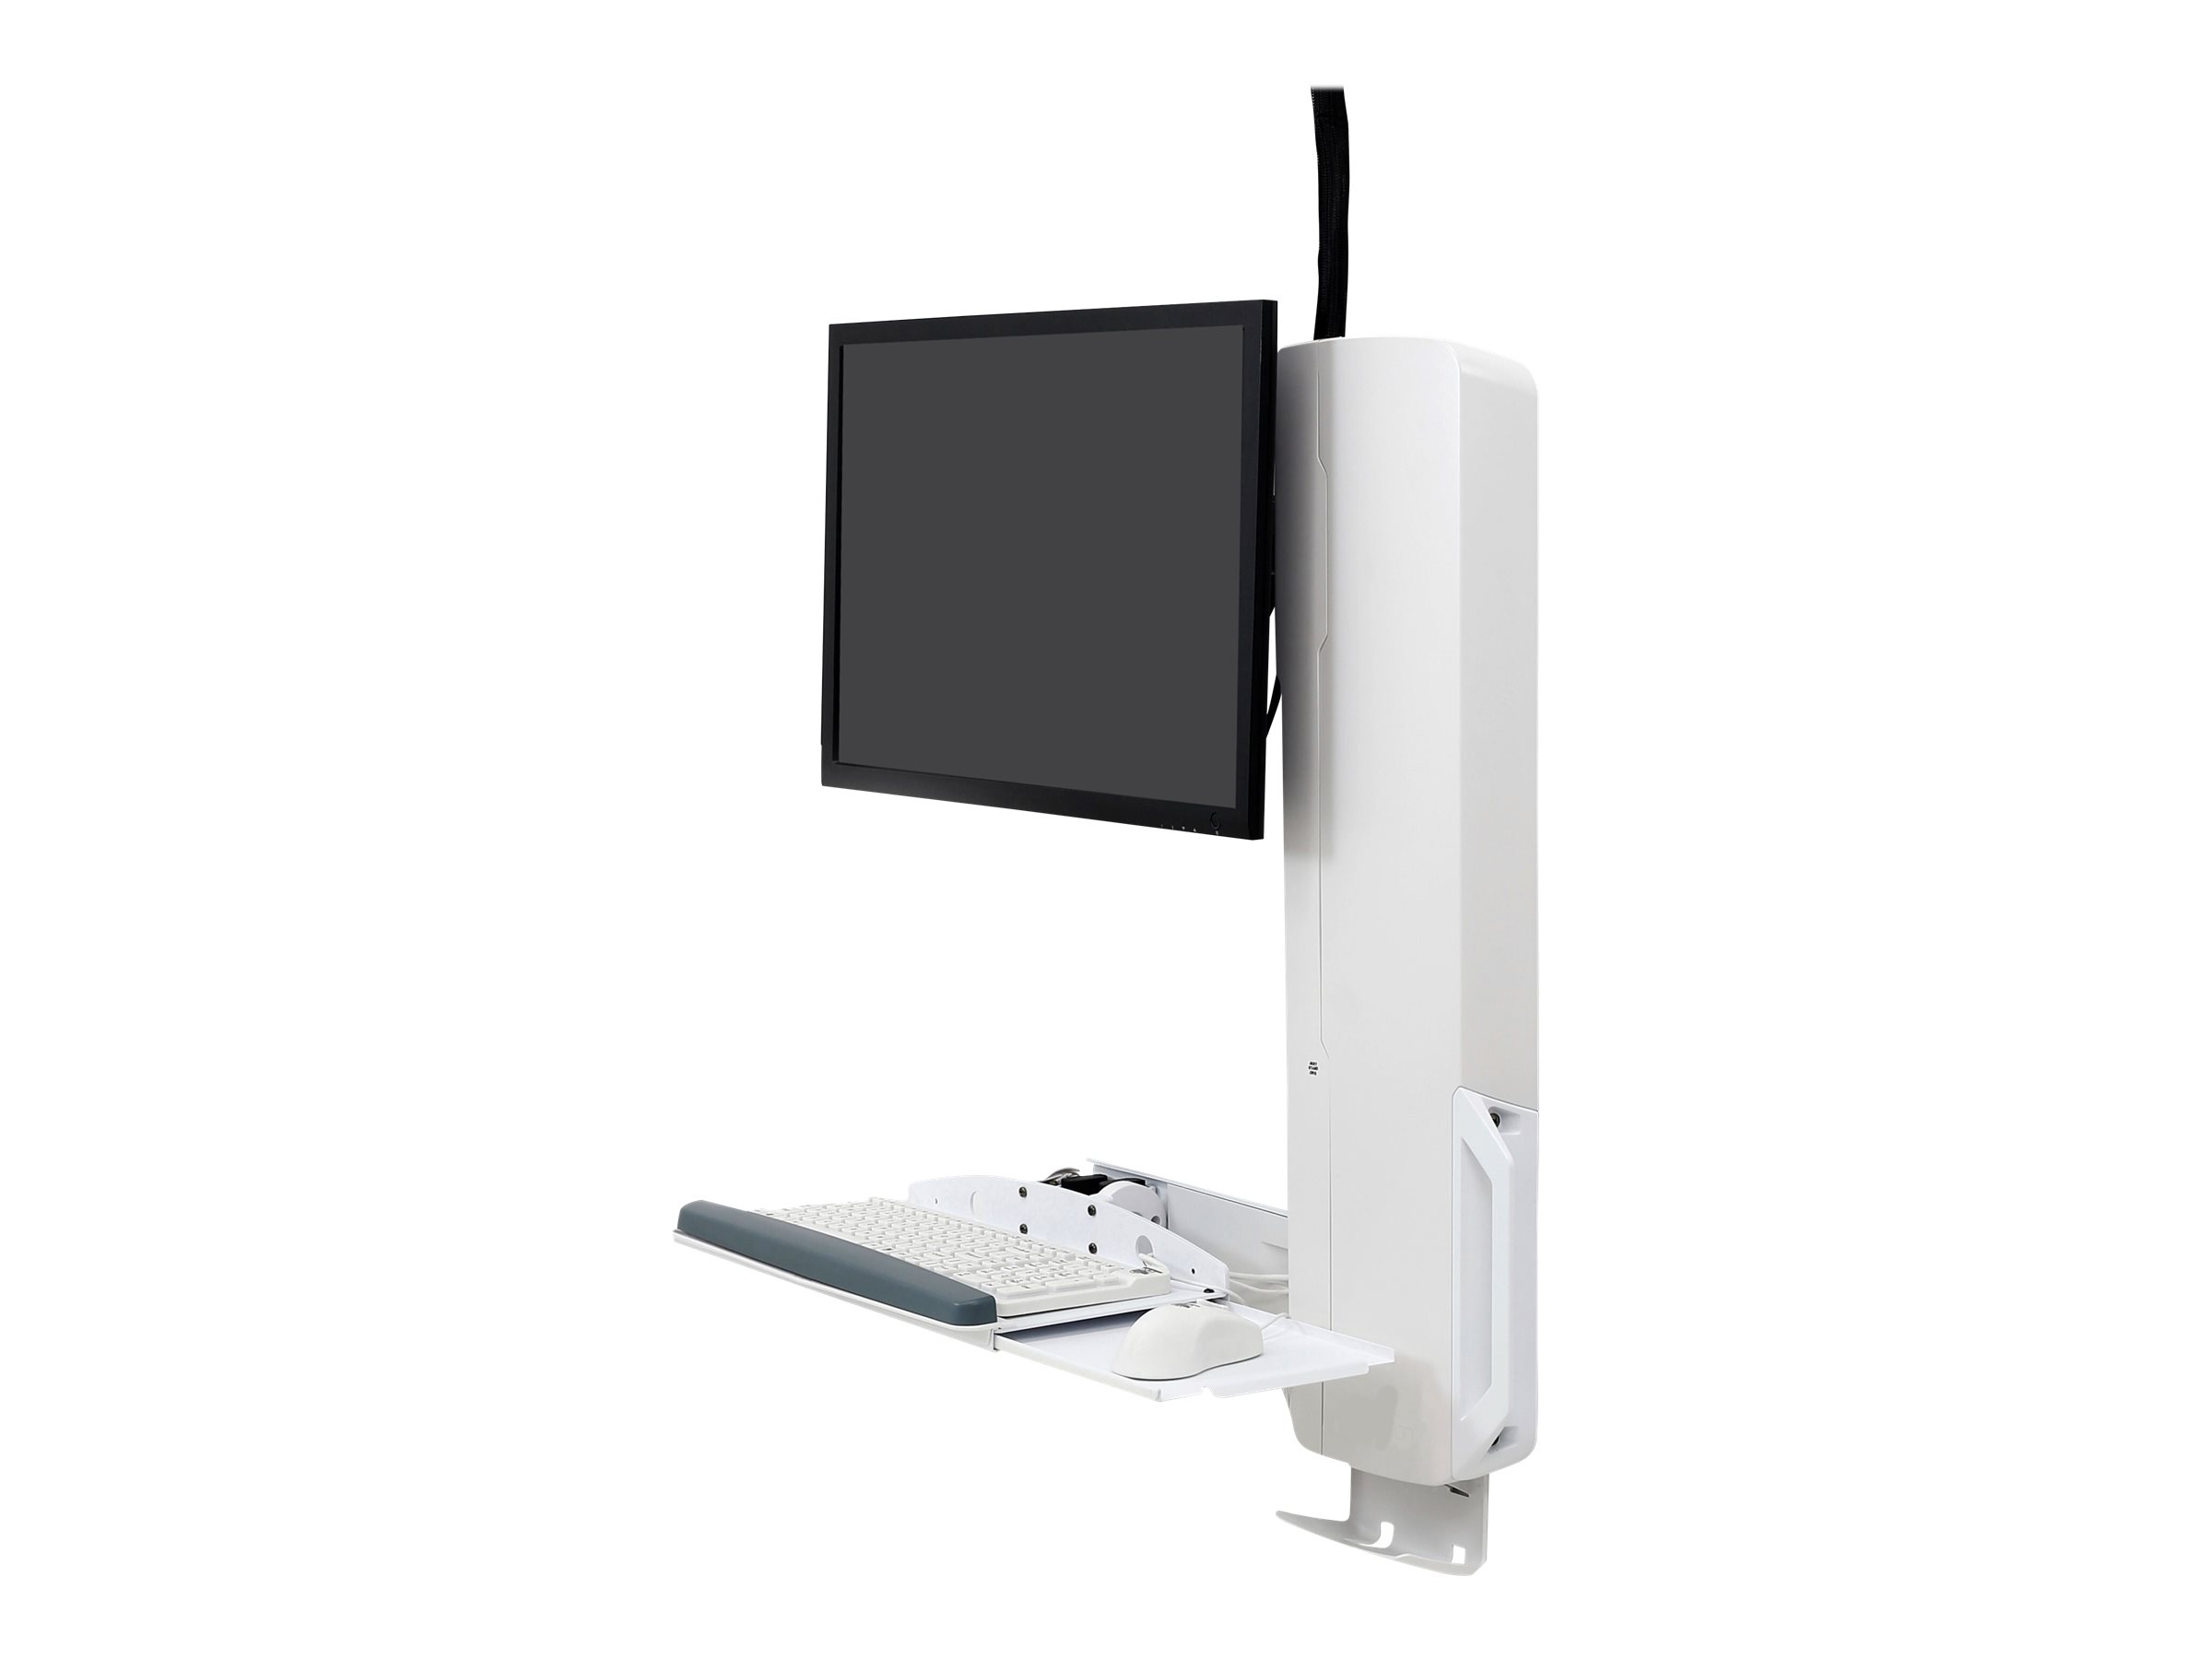 Ergotron - Befestigungskit (vertikaler Hub) - fr LCD-Display / PC-Ausrstung - Steh-Sitz-Sysetm - weiss - Bildschirmgrsse: bis